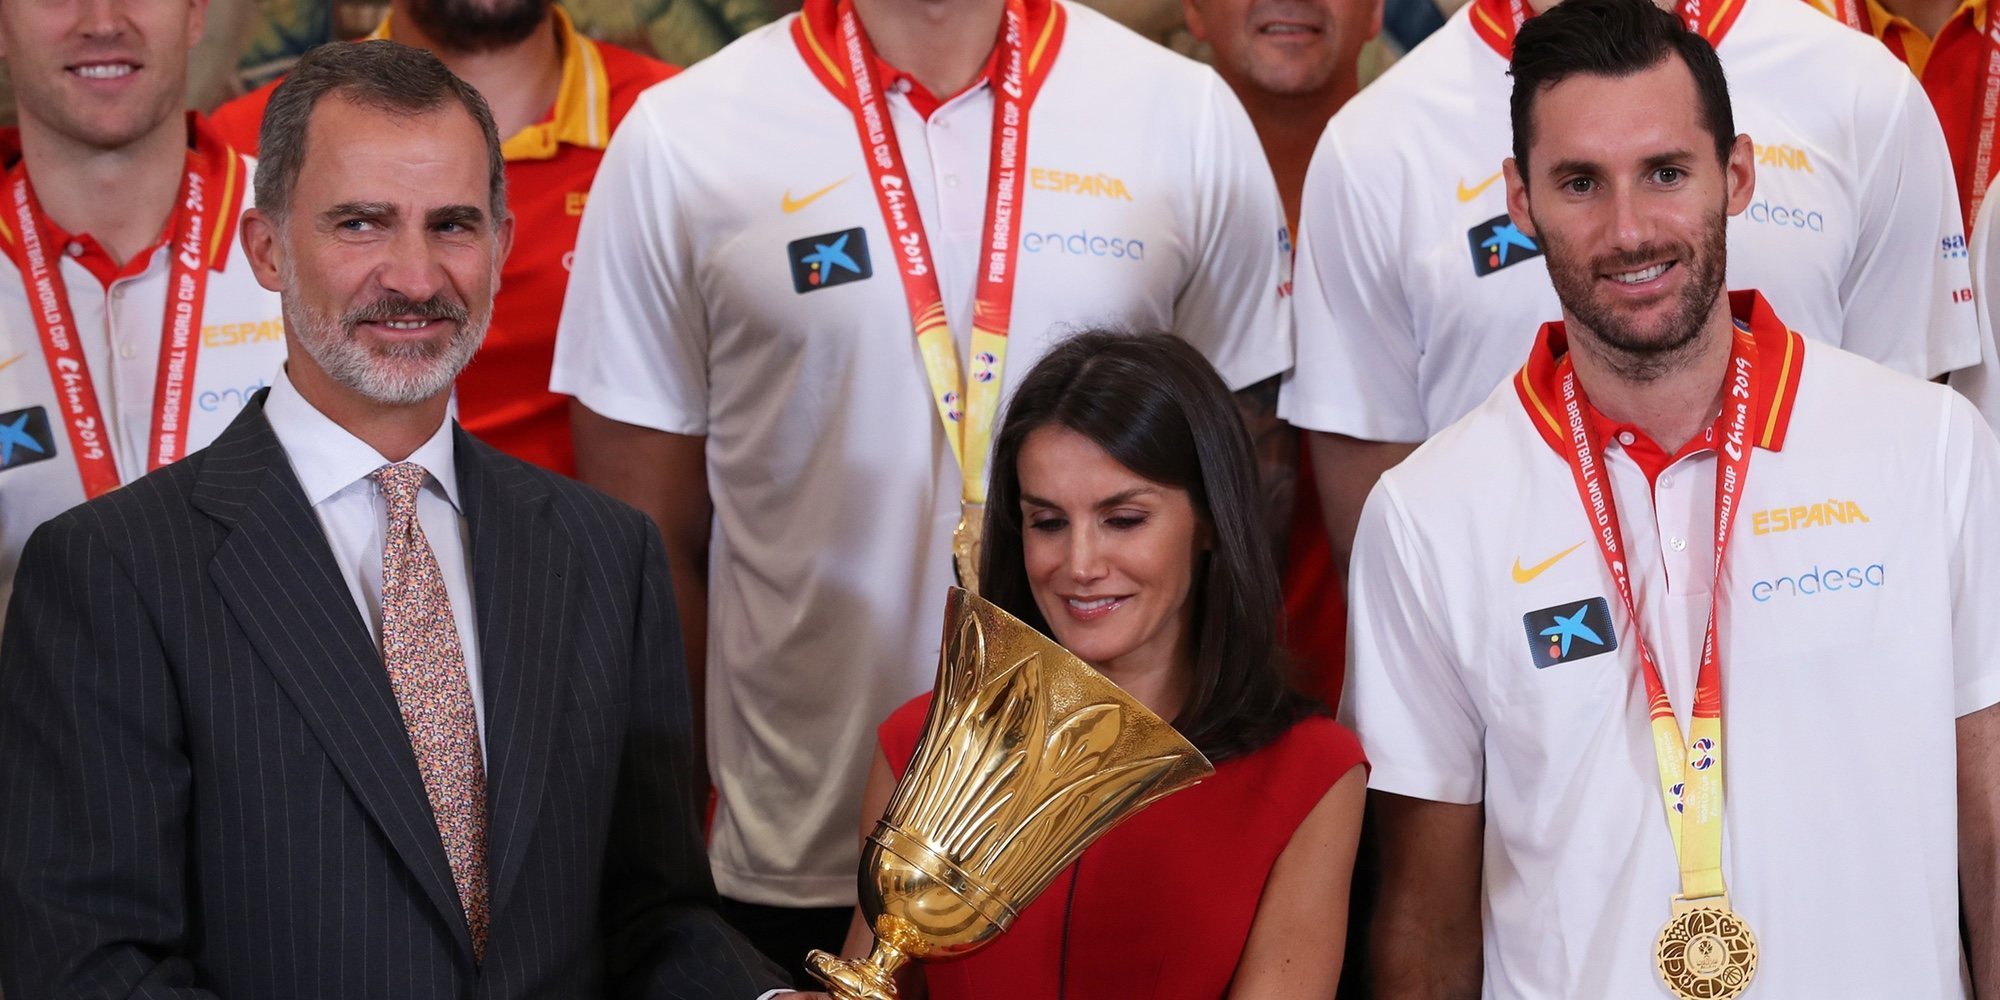 La recepción de los Reyes Felipe y Letizia a la selección española de Baloncesto: un vestido rojo y una confesión